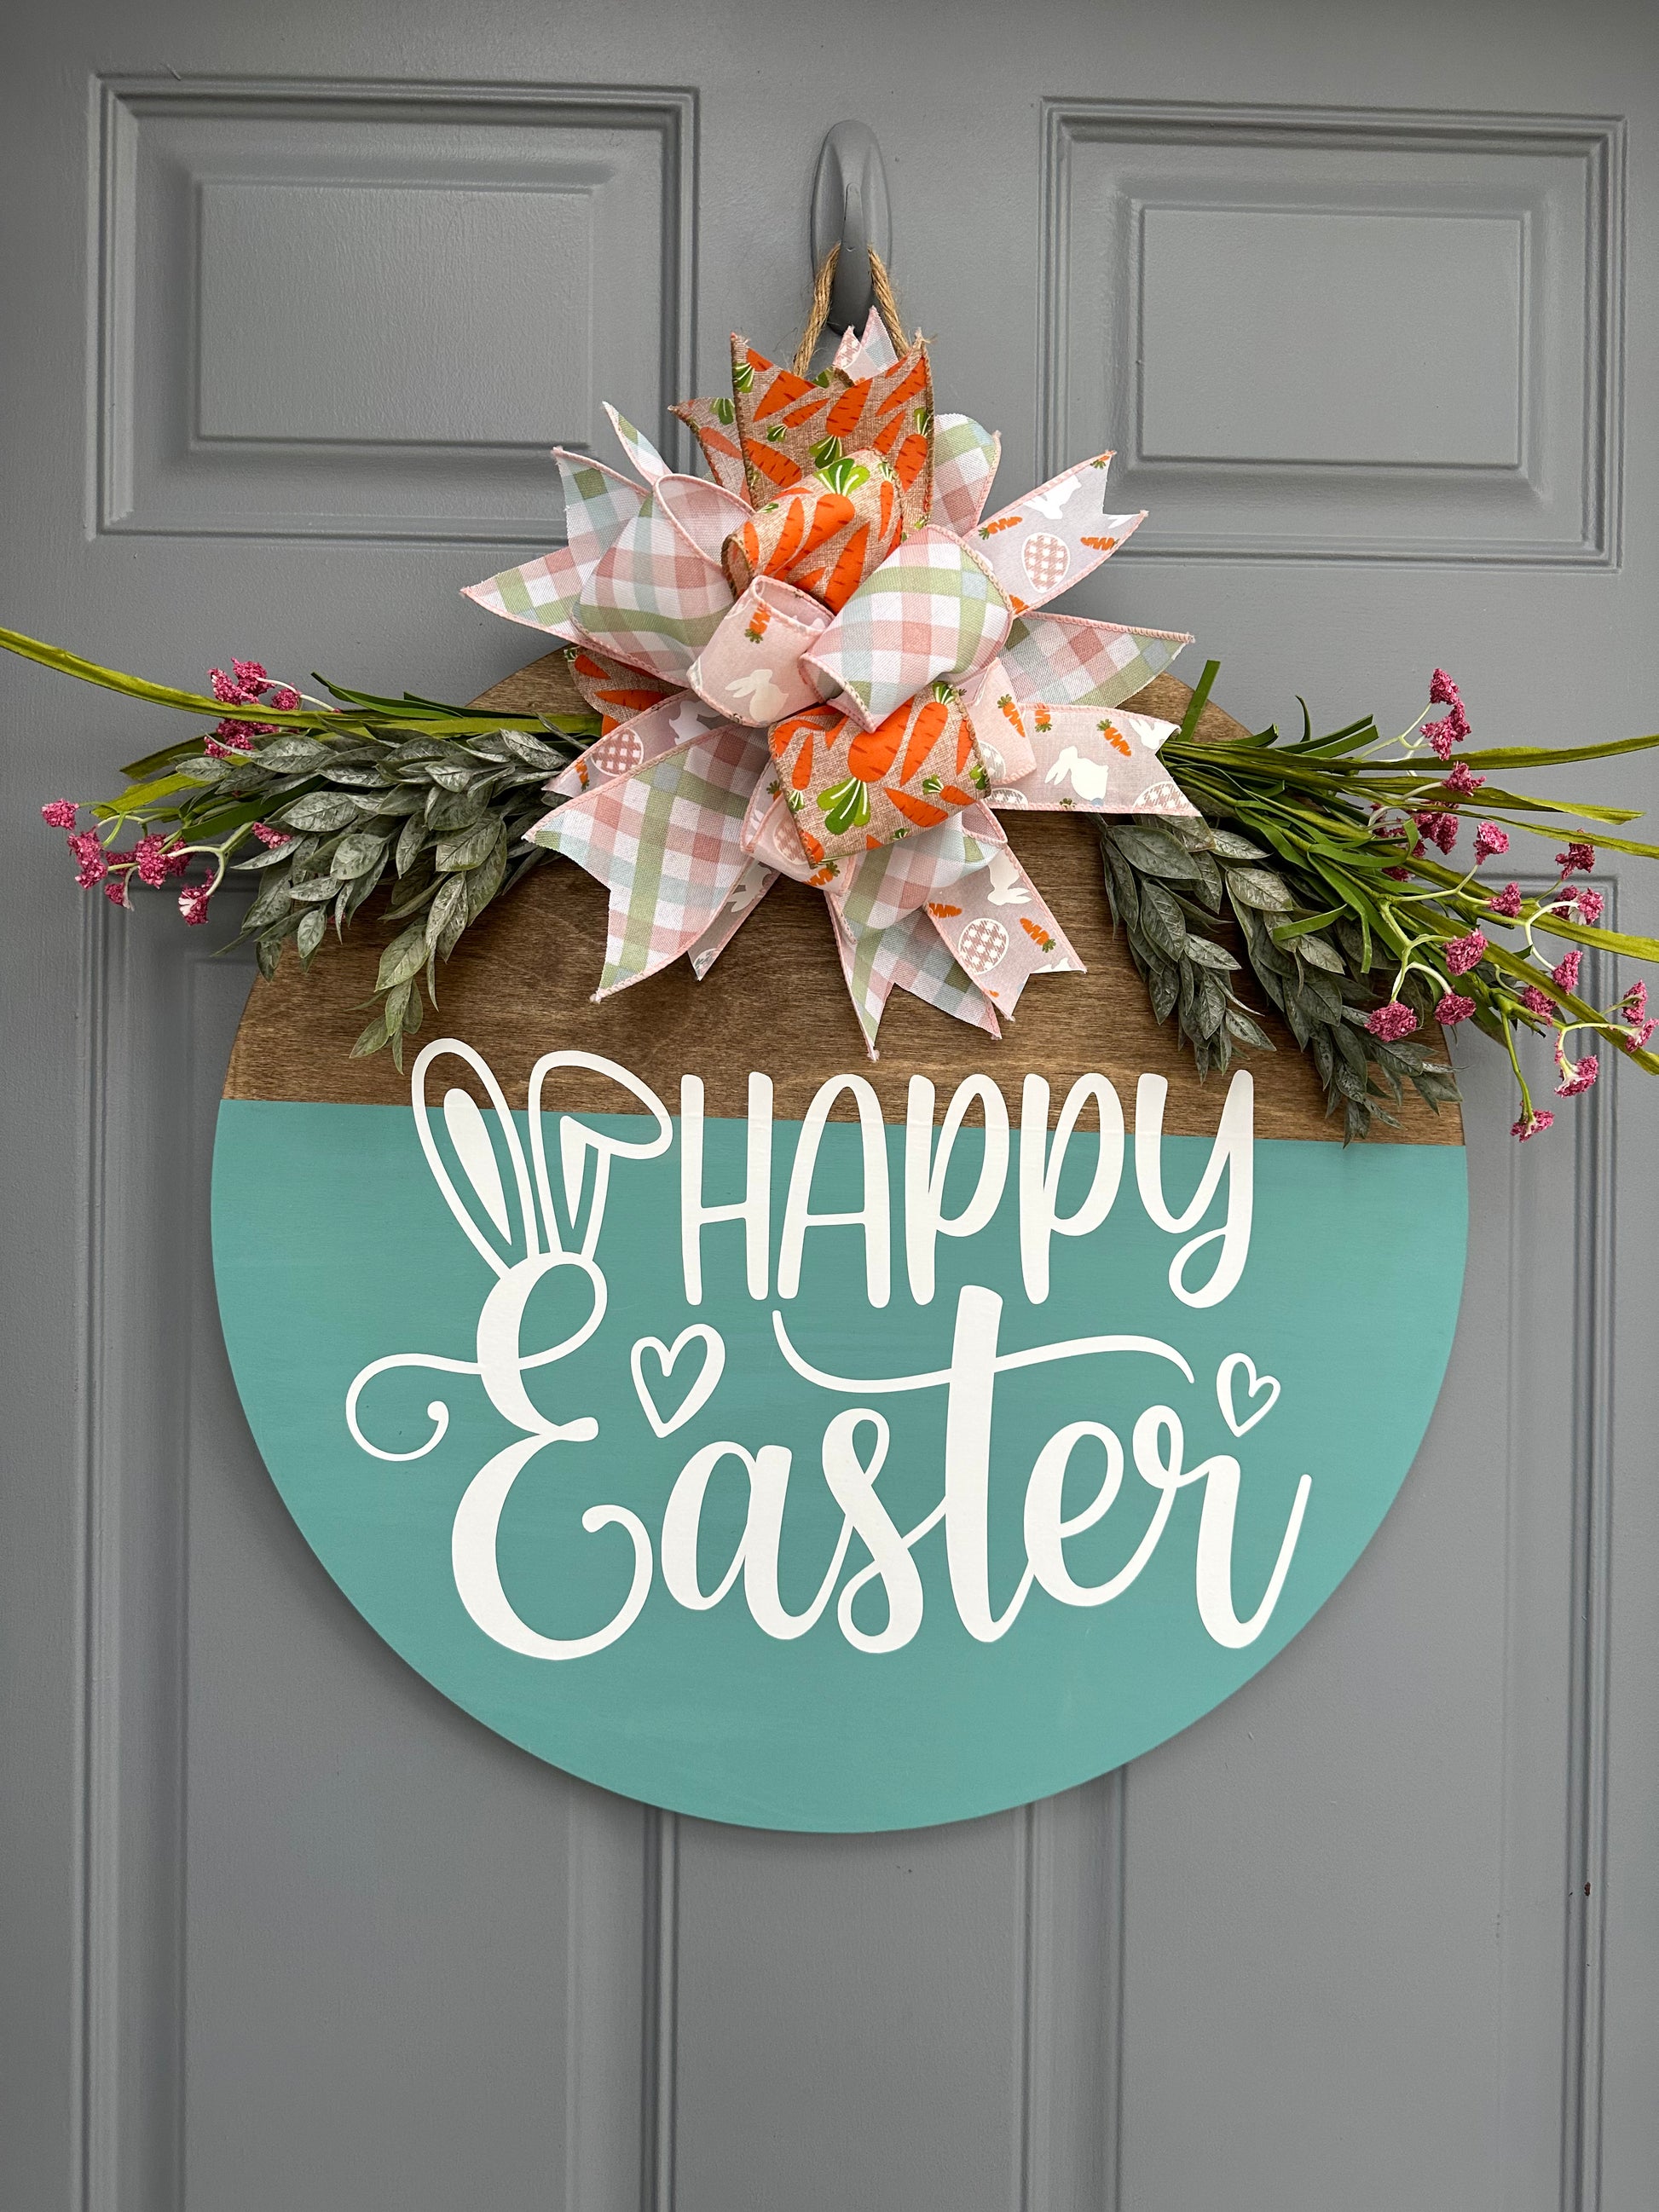 Happy Easter Door Hanger - Willow Love Bug Designs 